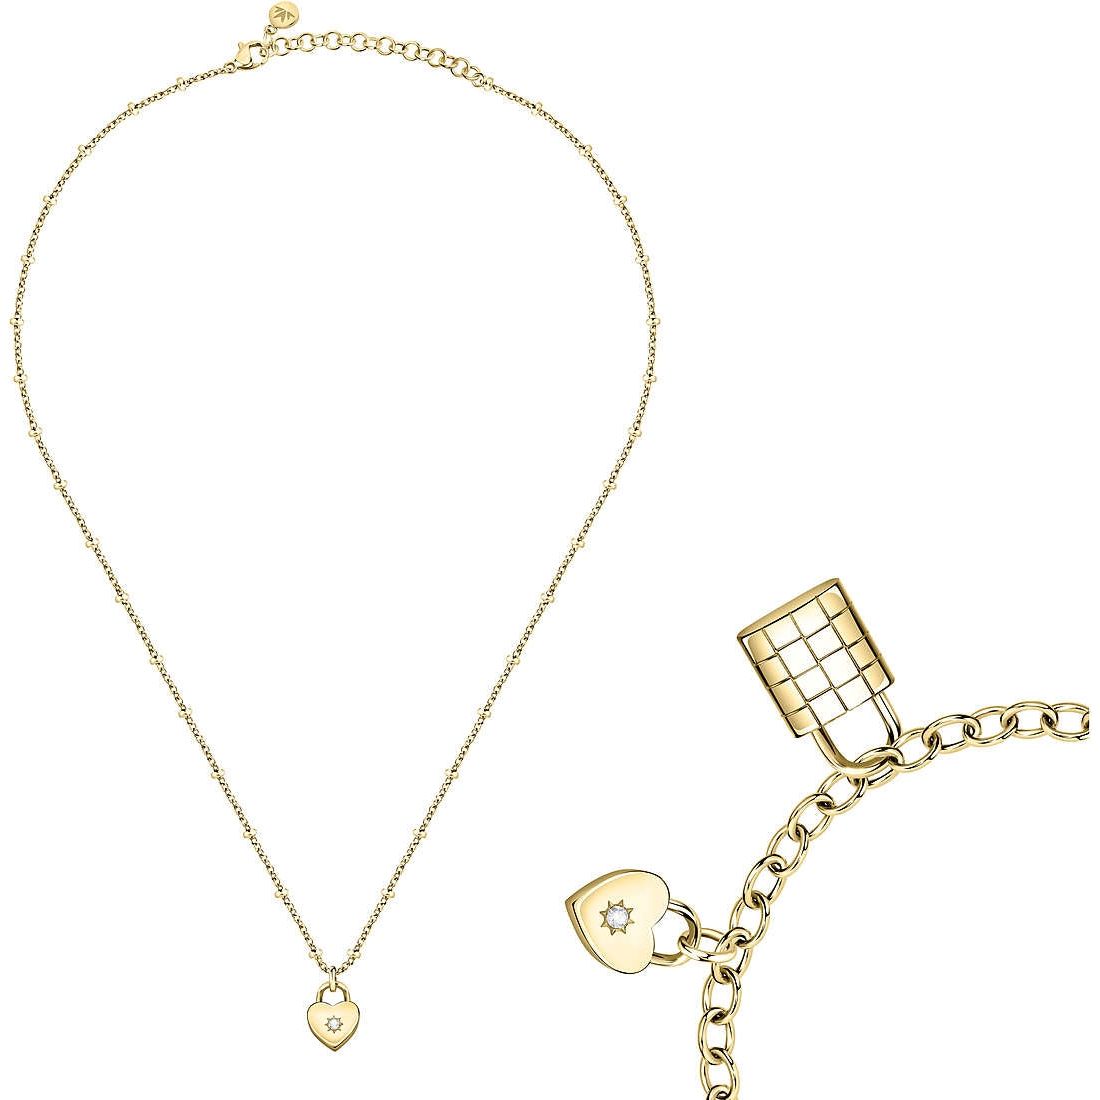 MORELLATO GIOIELLI MORELLATO GIOIELLI Mod. ABBRACCIO Special Pack Necklace + Bracelet DESIGNER FASHION JEWELLERY morellato-gioielli-mod-abbraccio-special-pack-necklace-bracelet